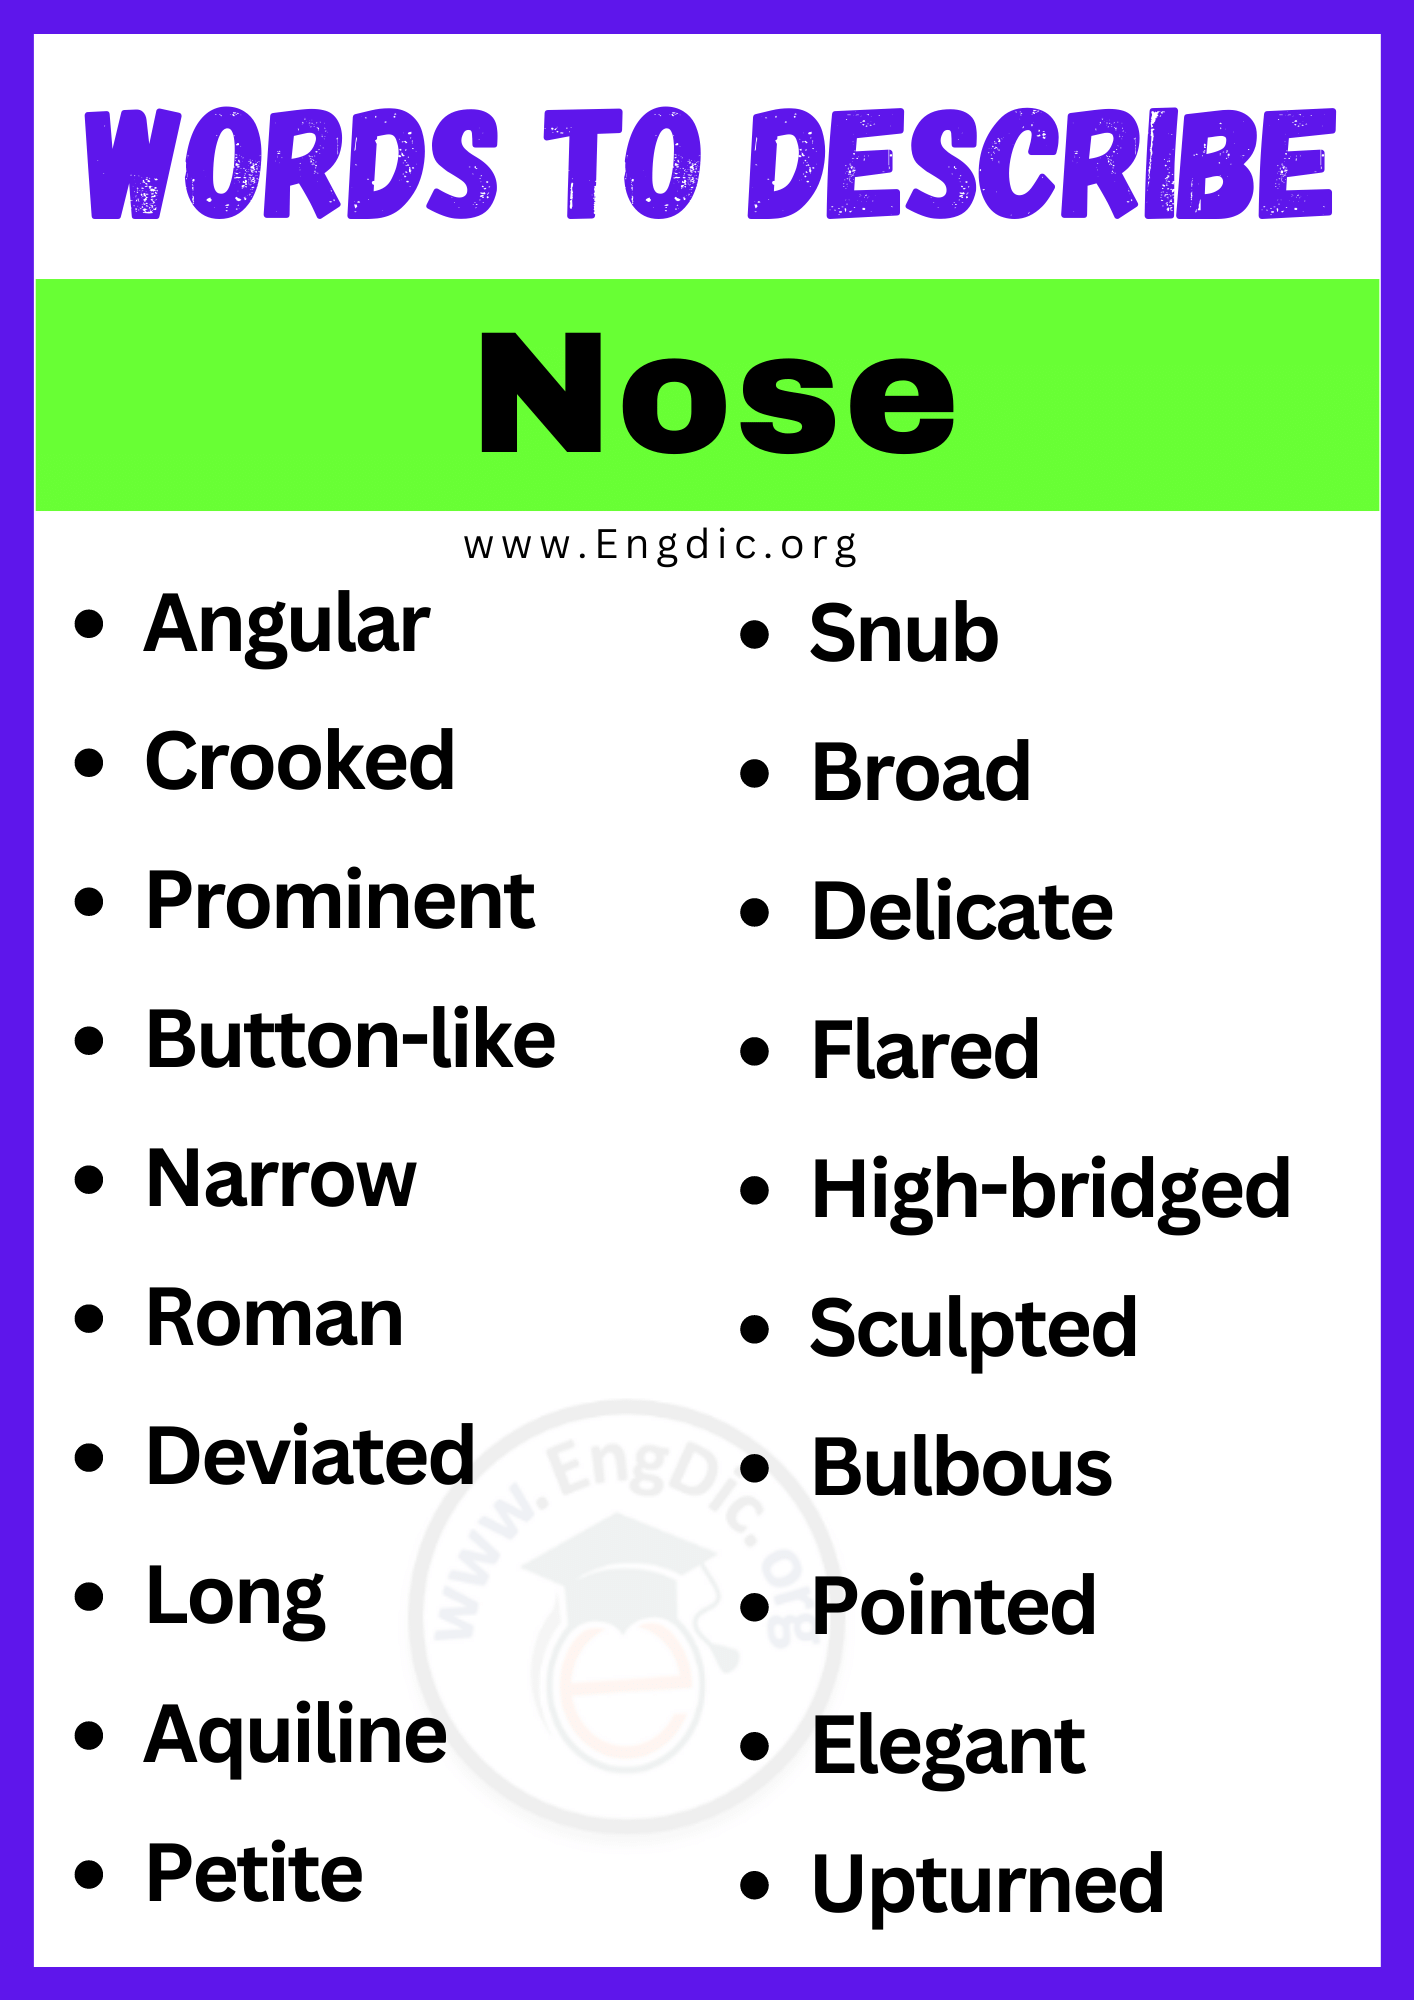 Words to Describe Nose